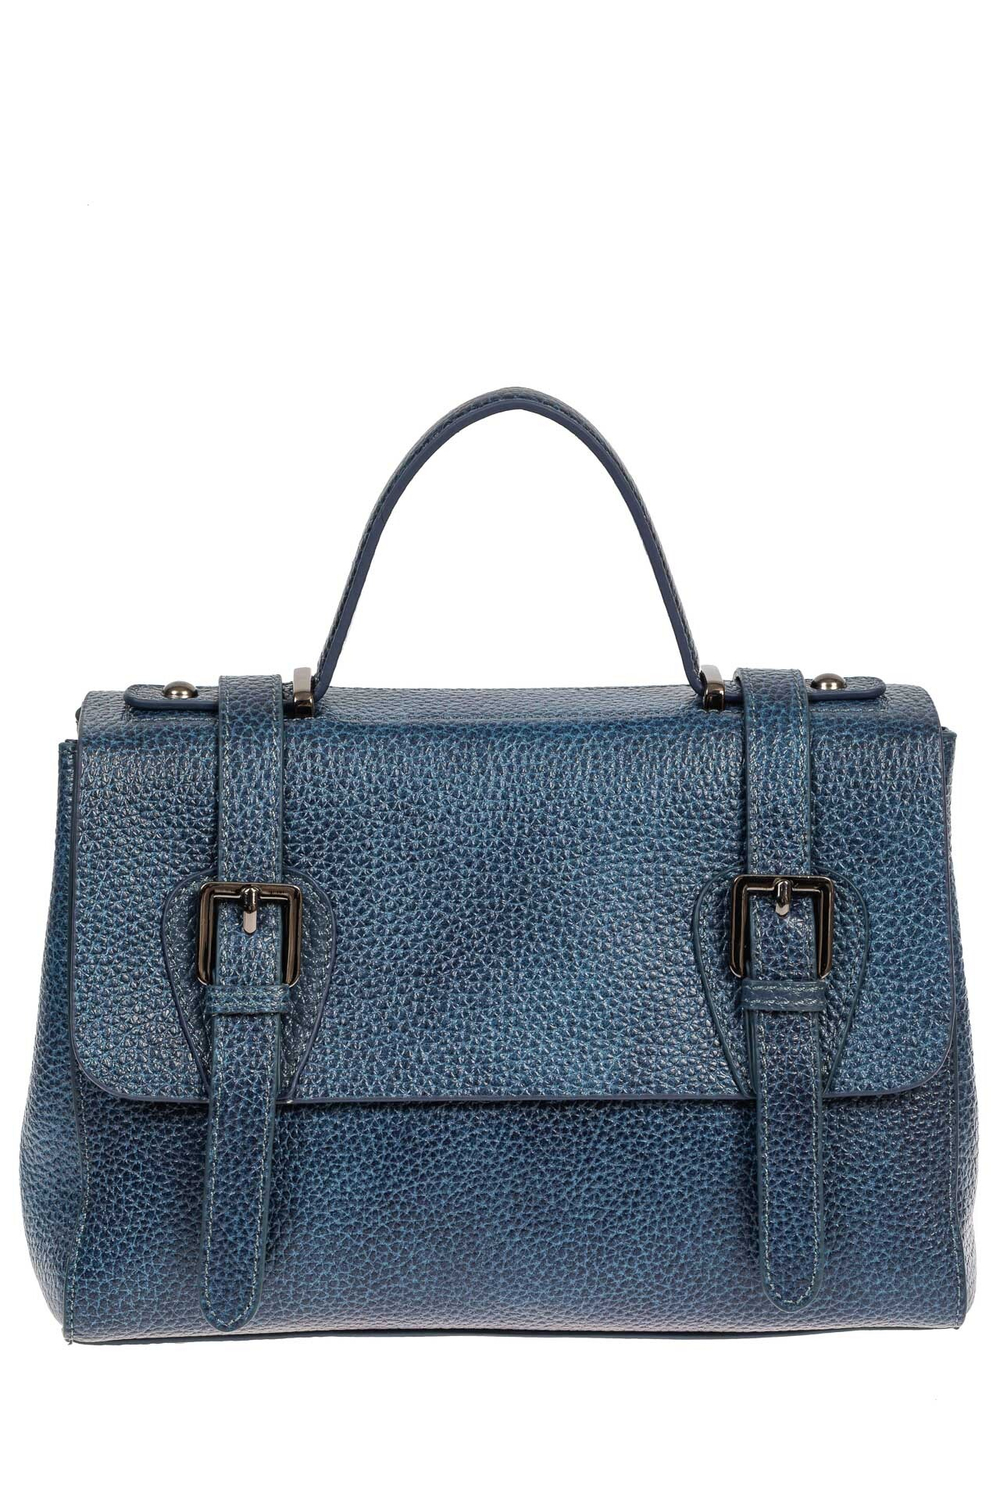 Женская сумка сэтчел из фактурной натуральной кожи, цвет синий